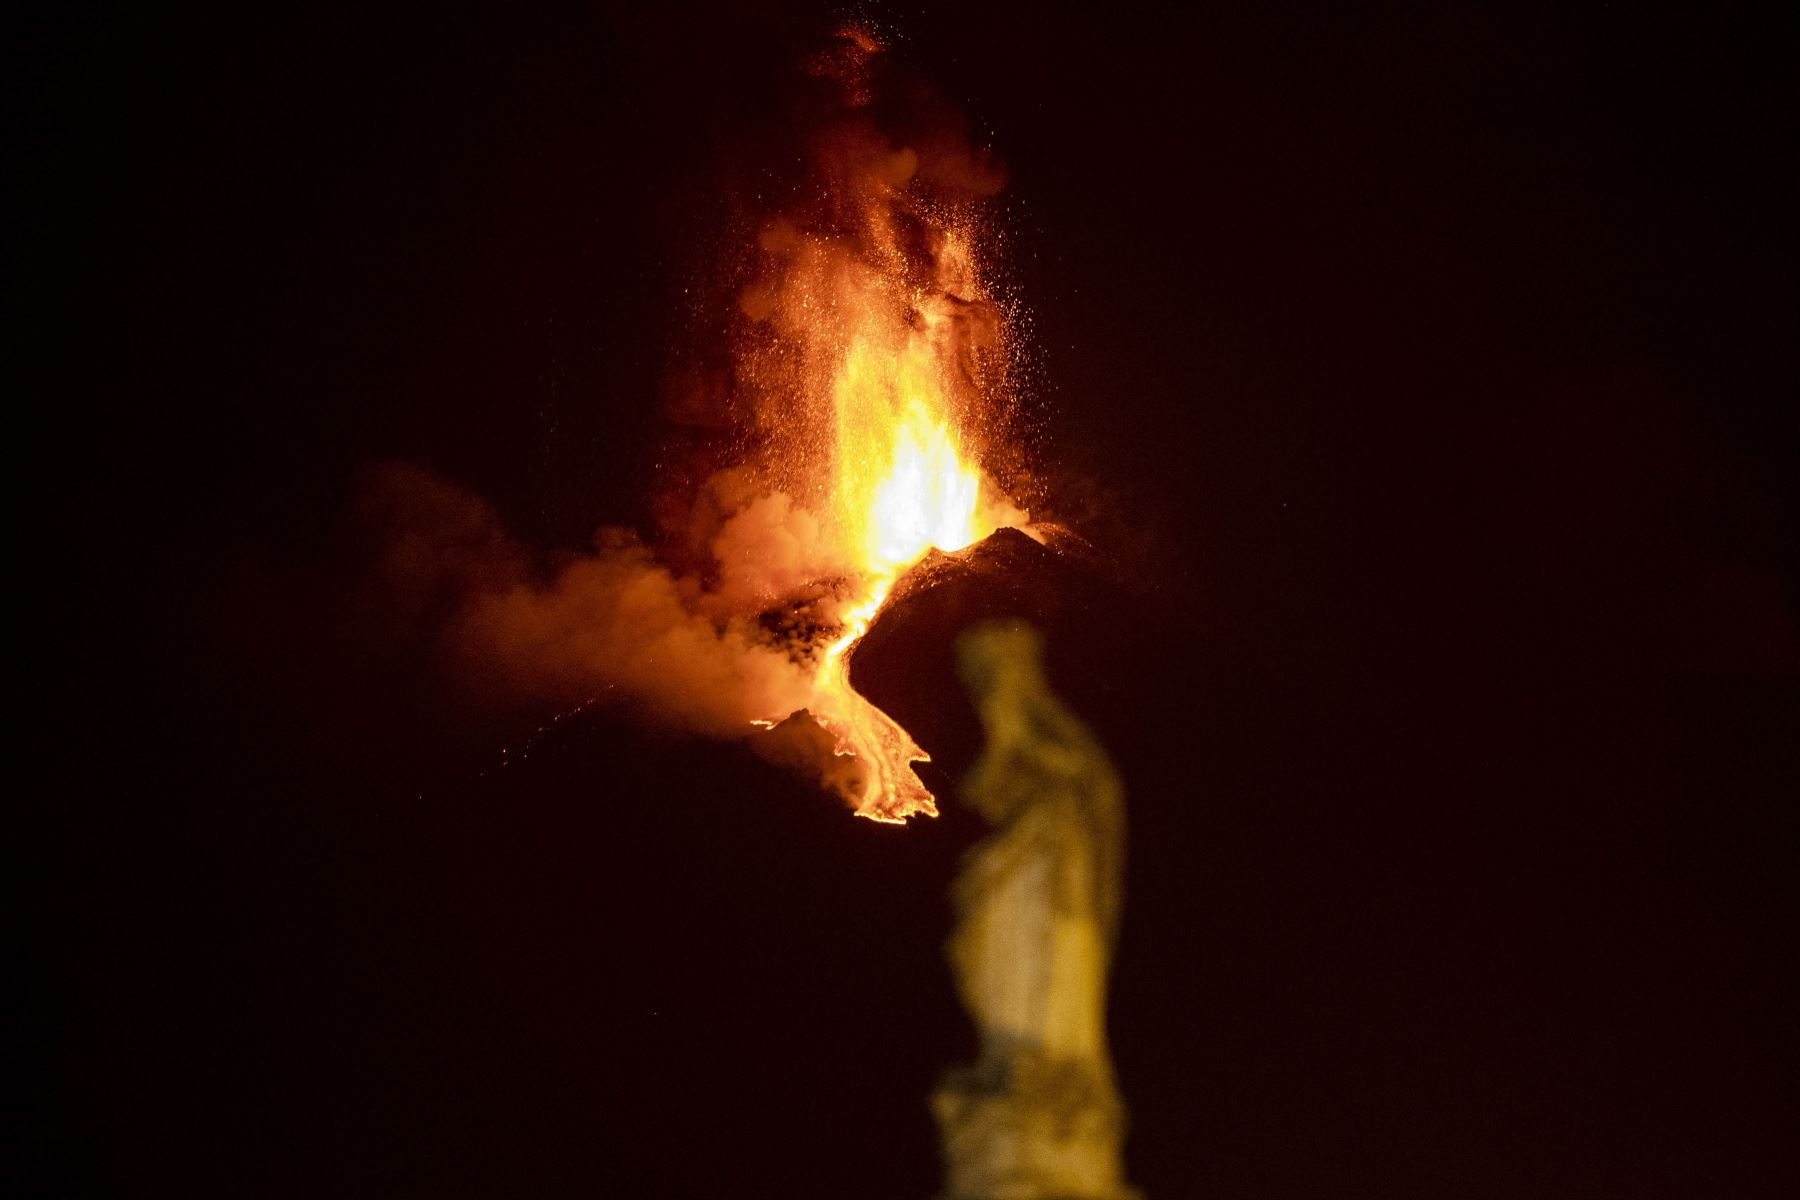 El volcán más activo de Europa, y muy cercano a la ciudad-puerto de Catania (costa este de Italia), ha estado con gran actividad las últimas semanas. Foto: AFP